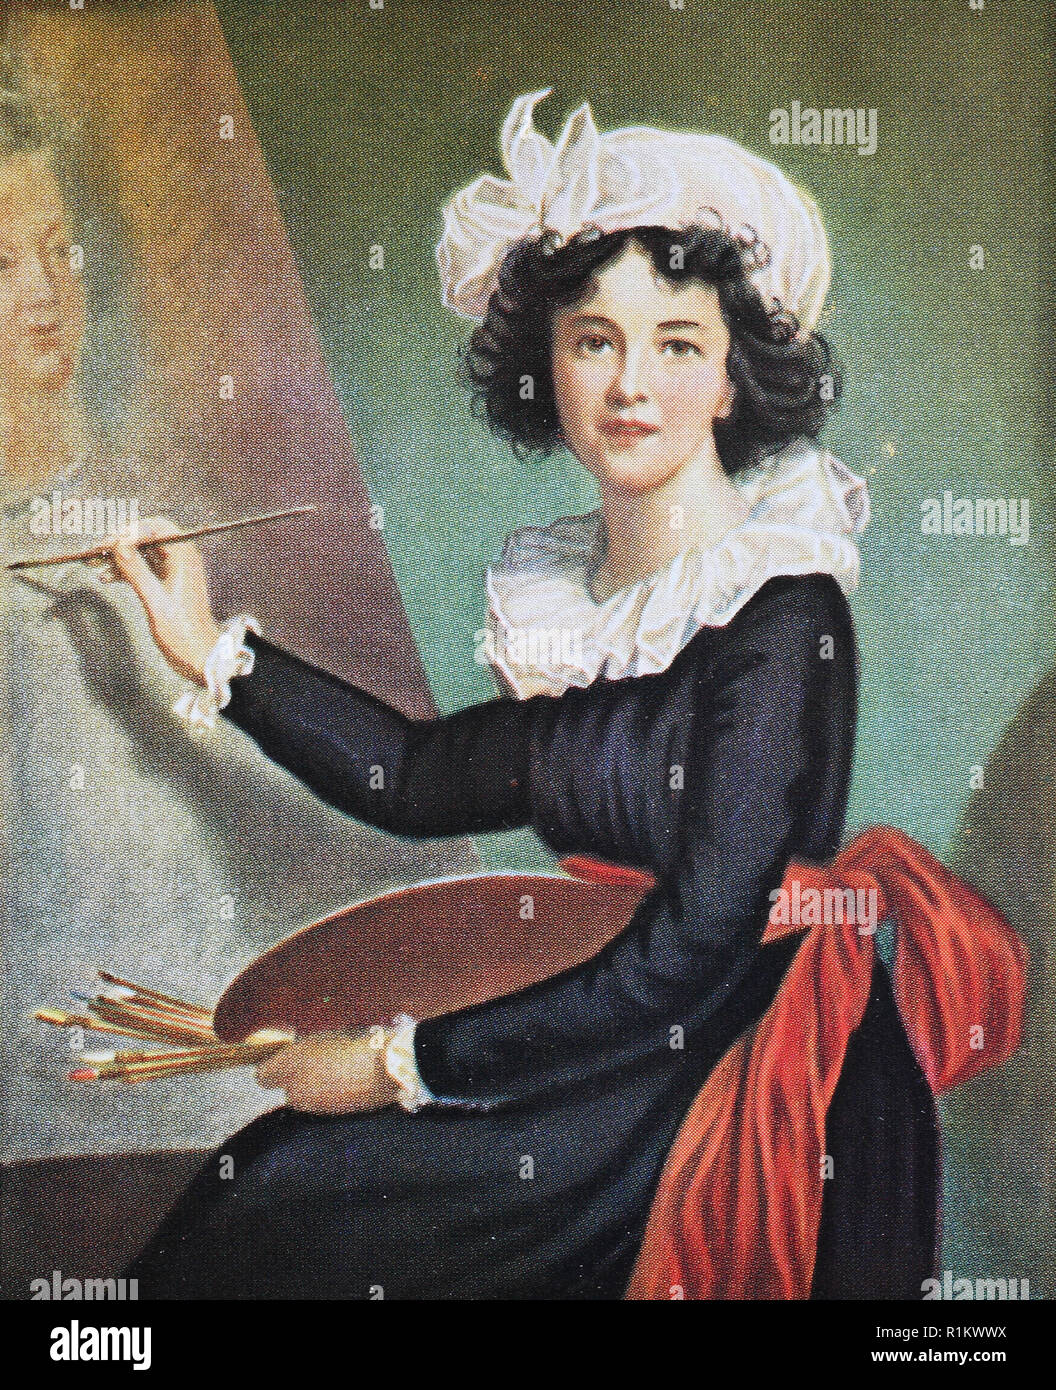 Digital verbesserte Reproduktion, Elisabeth Louise Vigee Le Brun, 1755-1842, auch bekannt als Madame Lebrun oder Madame Le Brun, war ein prominenter französischer Portrait Maler des späten achtzehnten Jahrhunderts Stockfoto